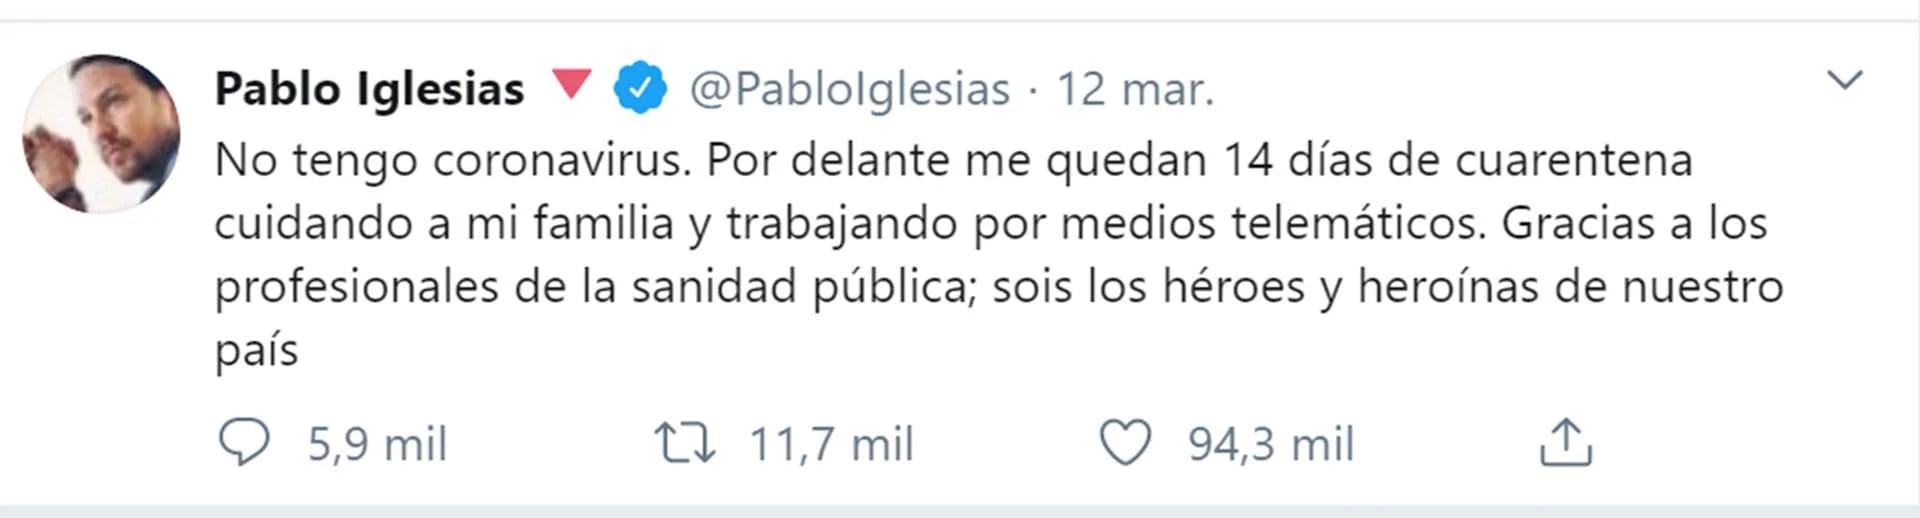 El 12 de marzo, hace dos días, Iglesias decía en Twitter que iba a hacer cuarentena
